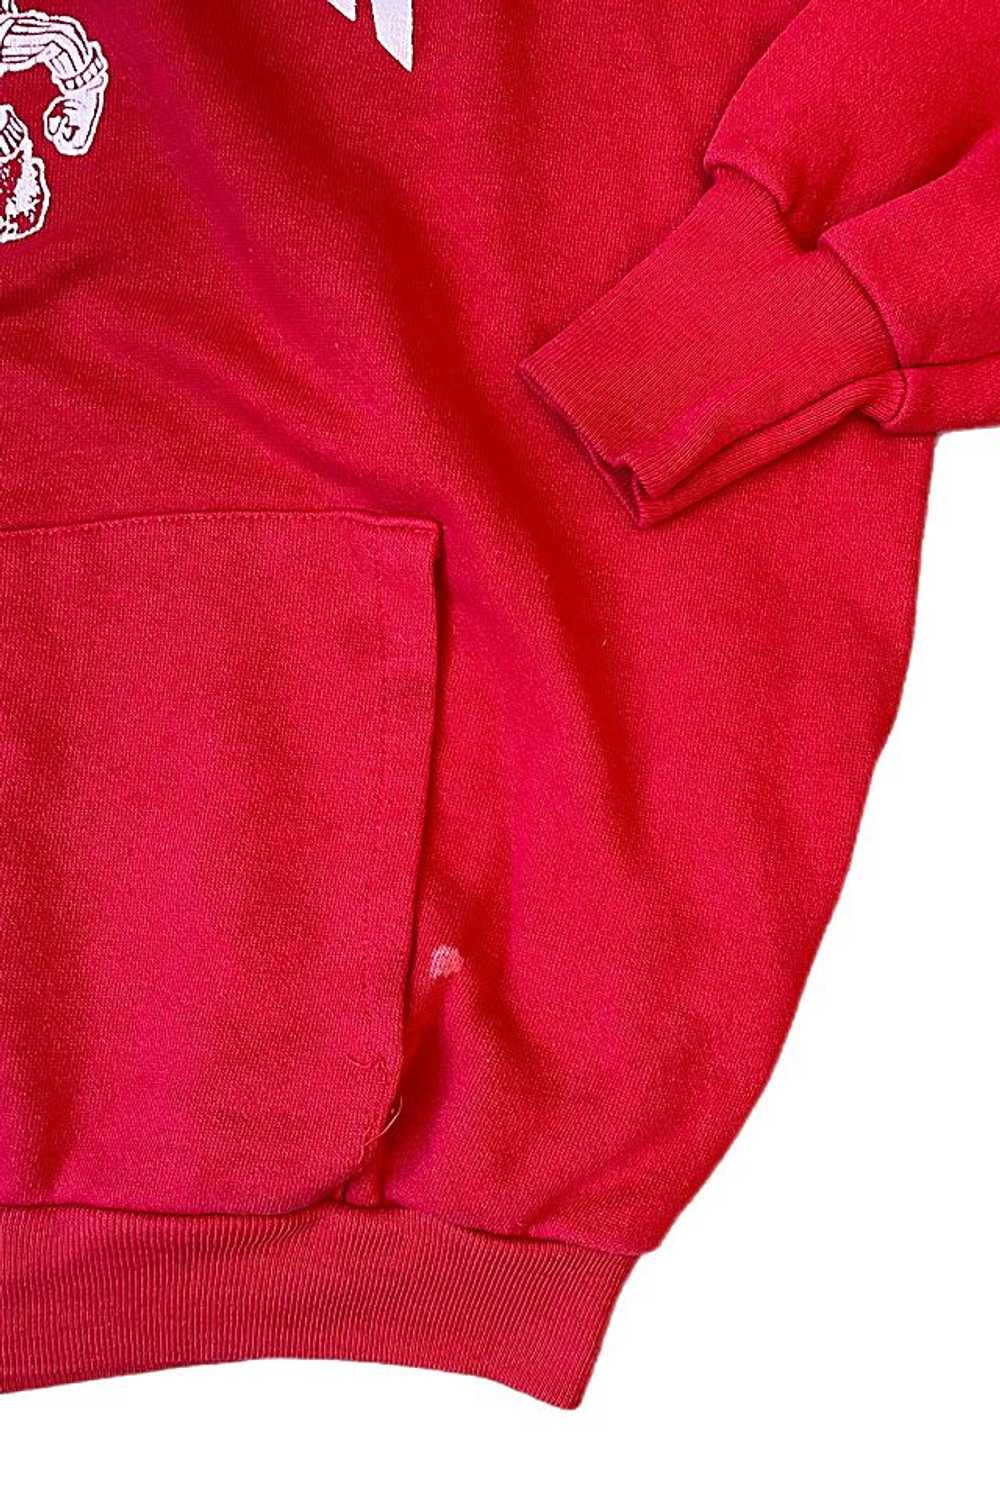 1980's Wisconsin Badgers Hooded Sweatshirt Select… - image 2